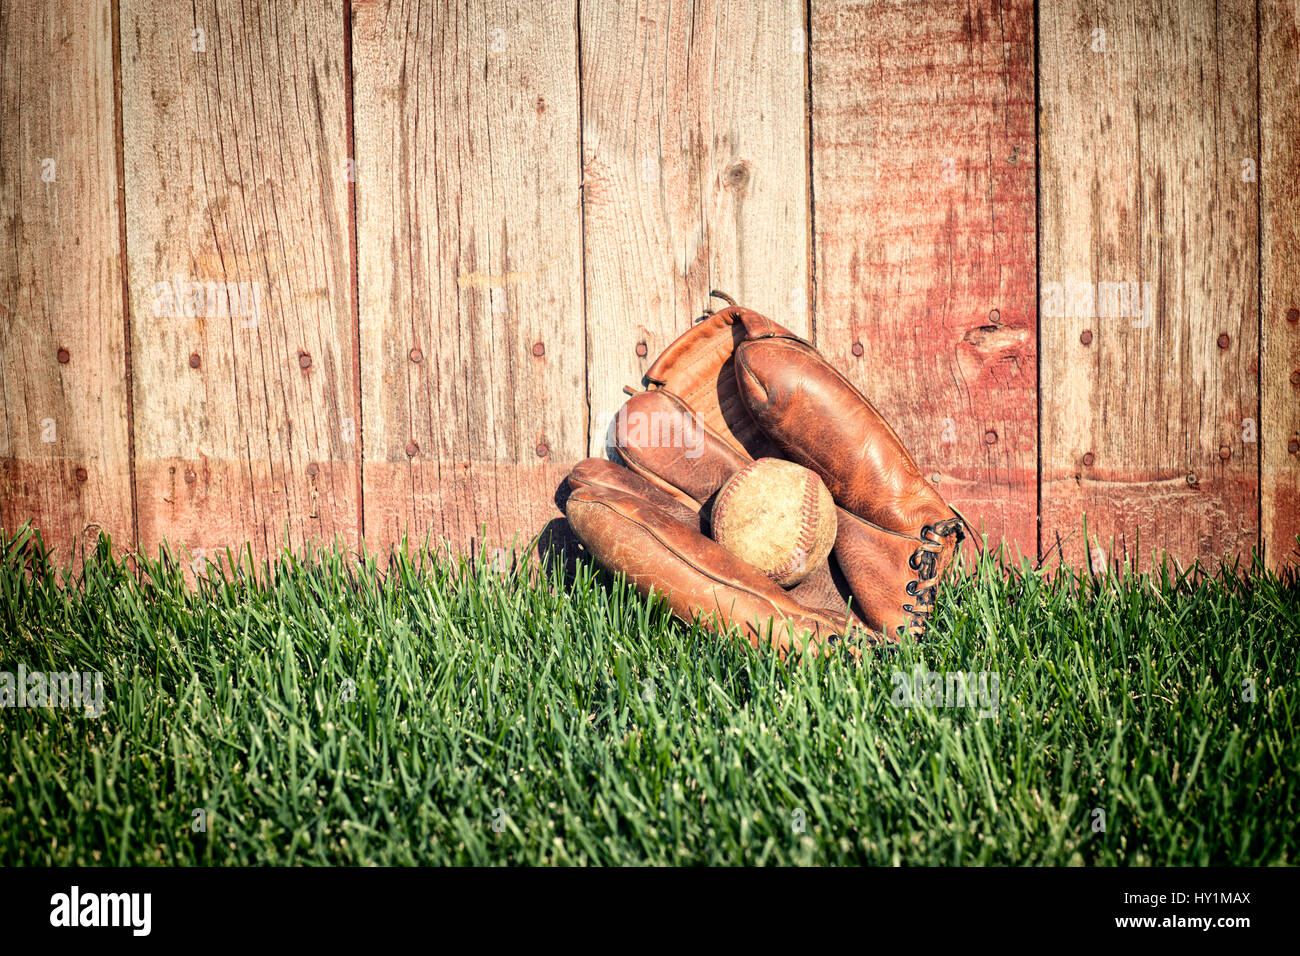 Guante de béisbol de cuero viejo y la bola en campo de hierba contra una valla de madera áspera Foto de stock